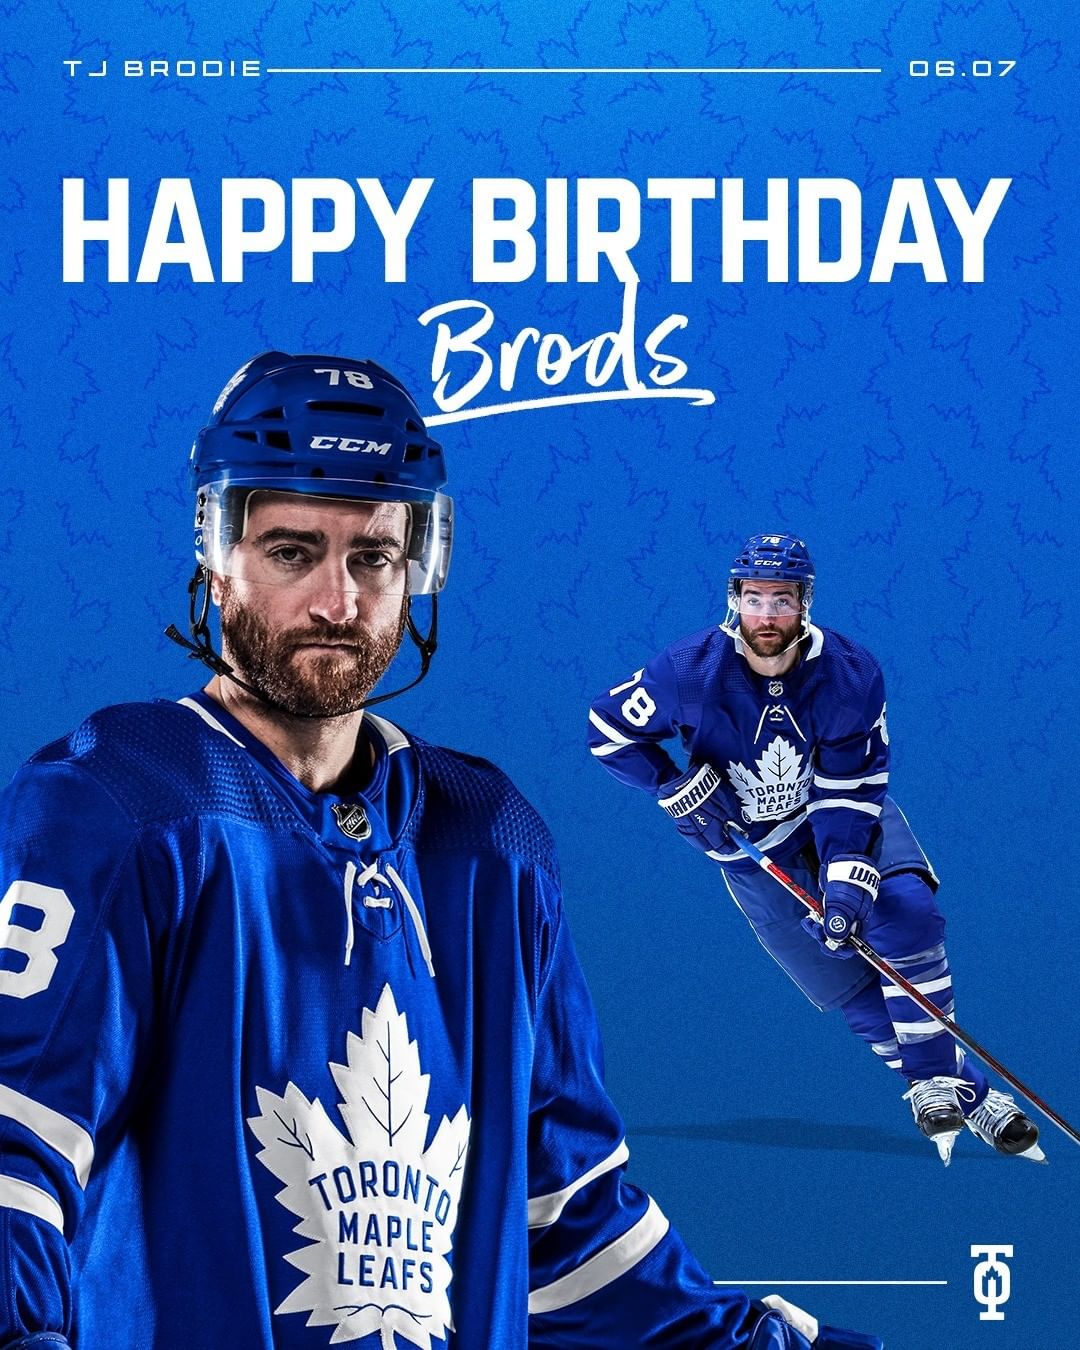 Happy birthday, Brods...